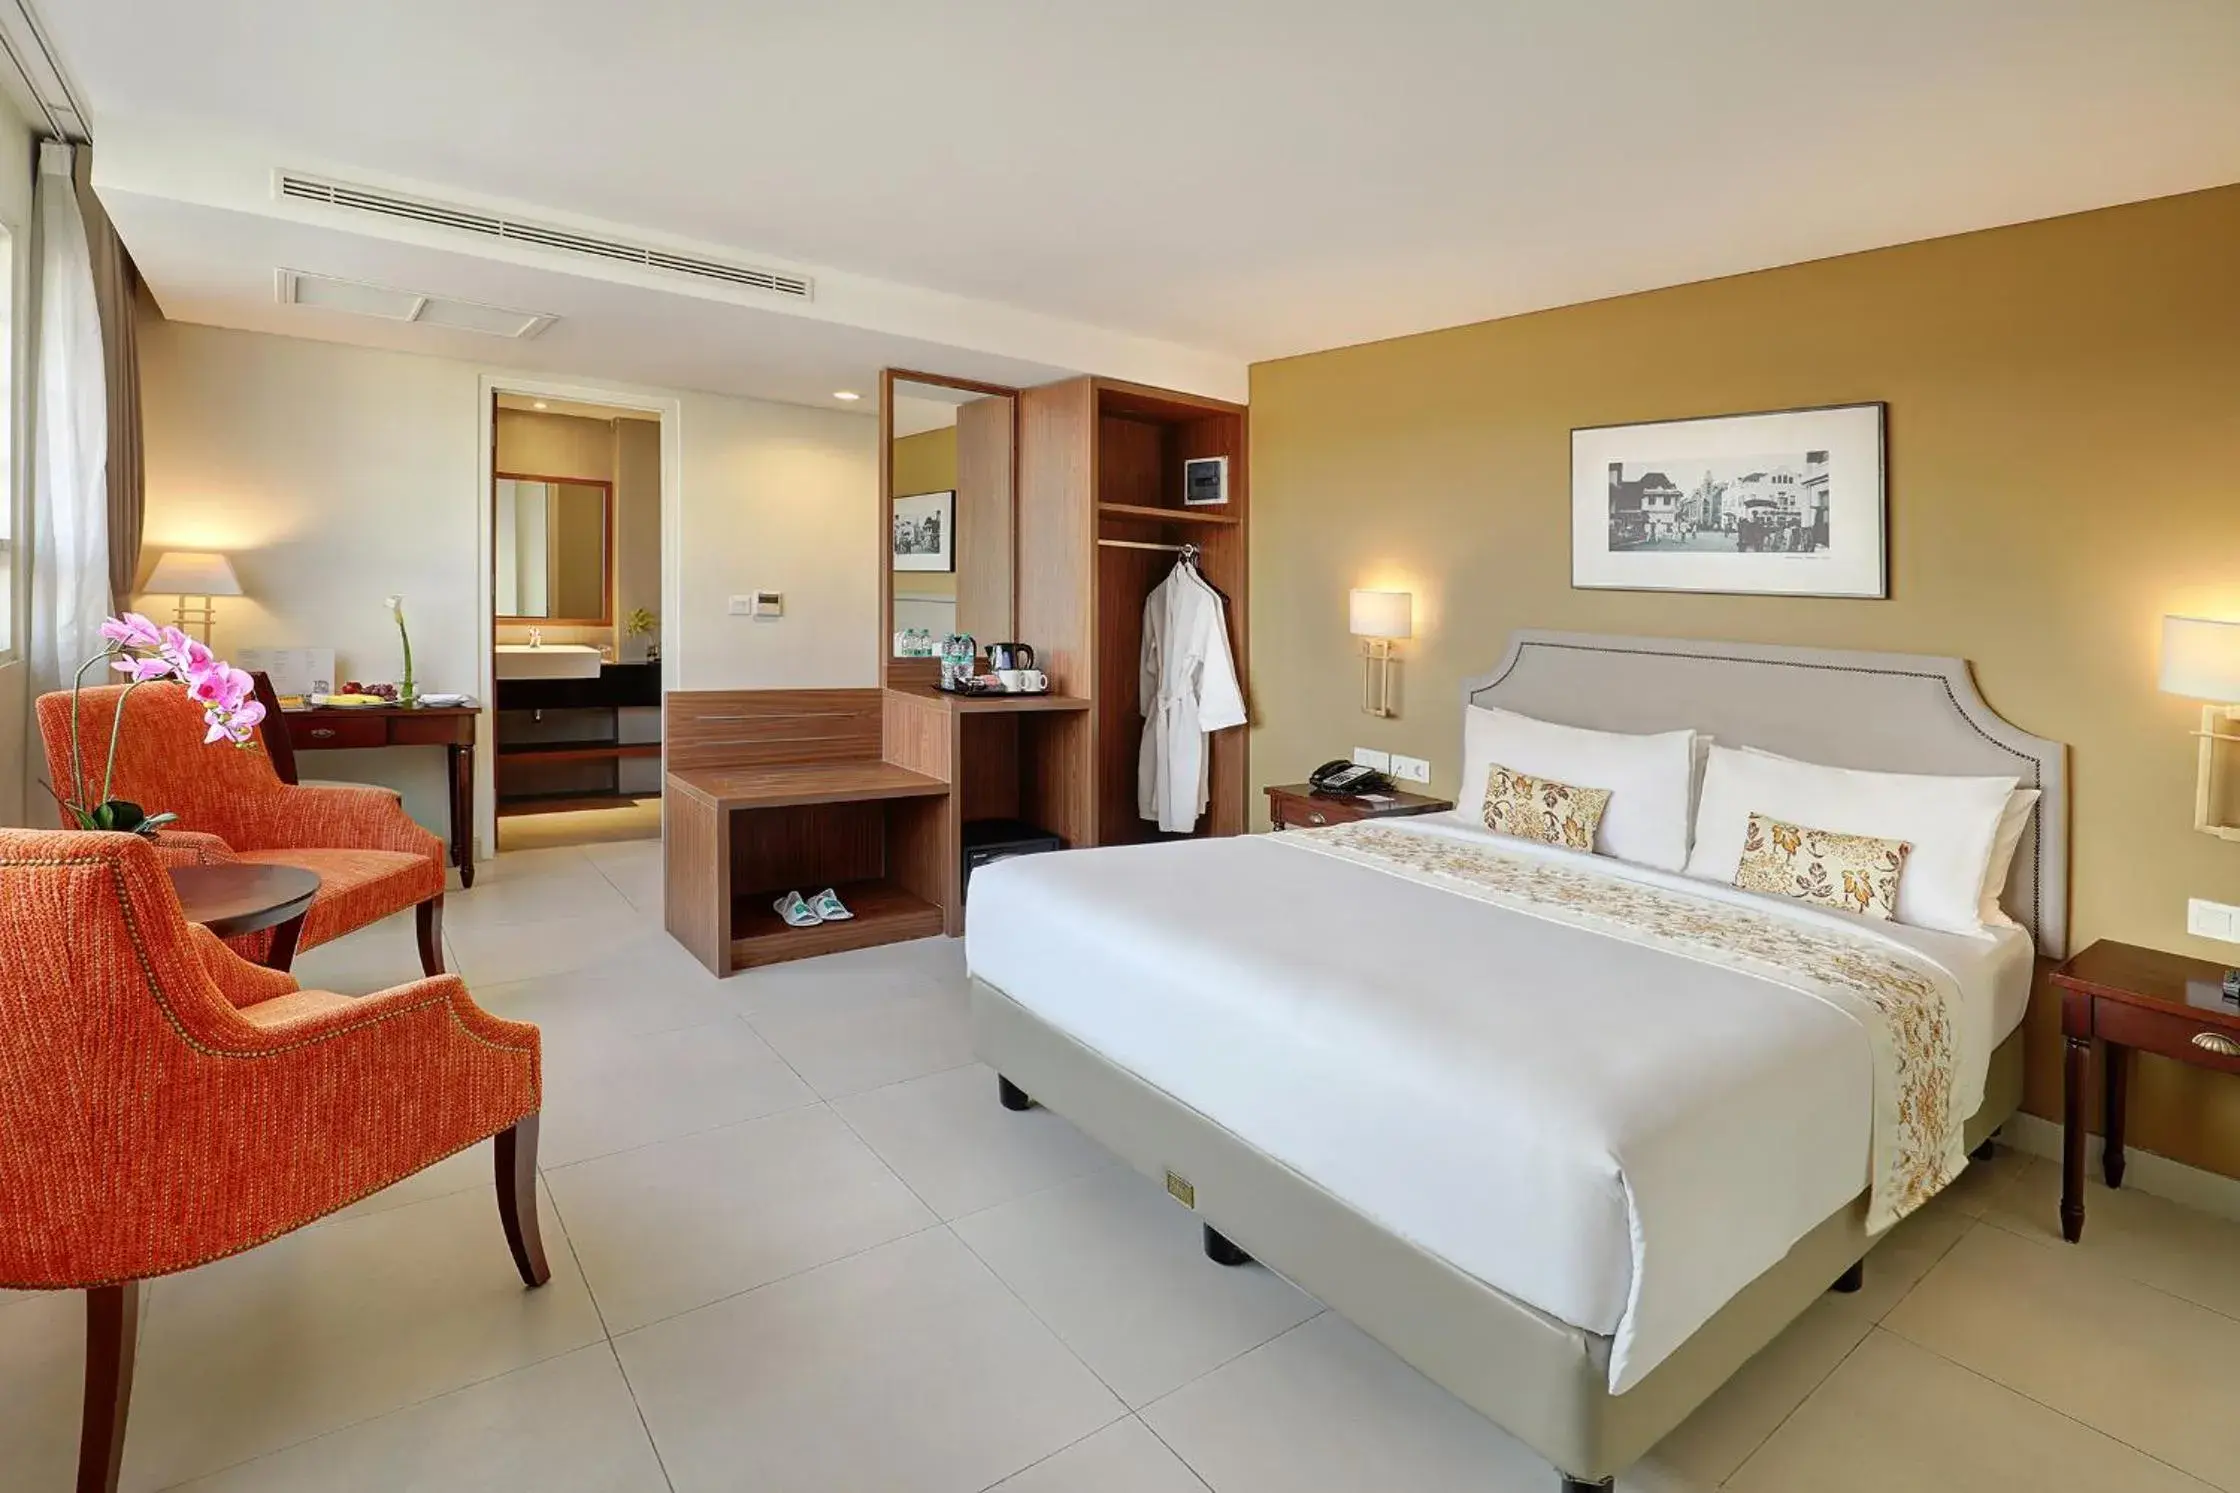 Bed, Room Photo in Kokoon Hotel Surabaya